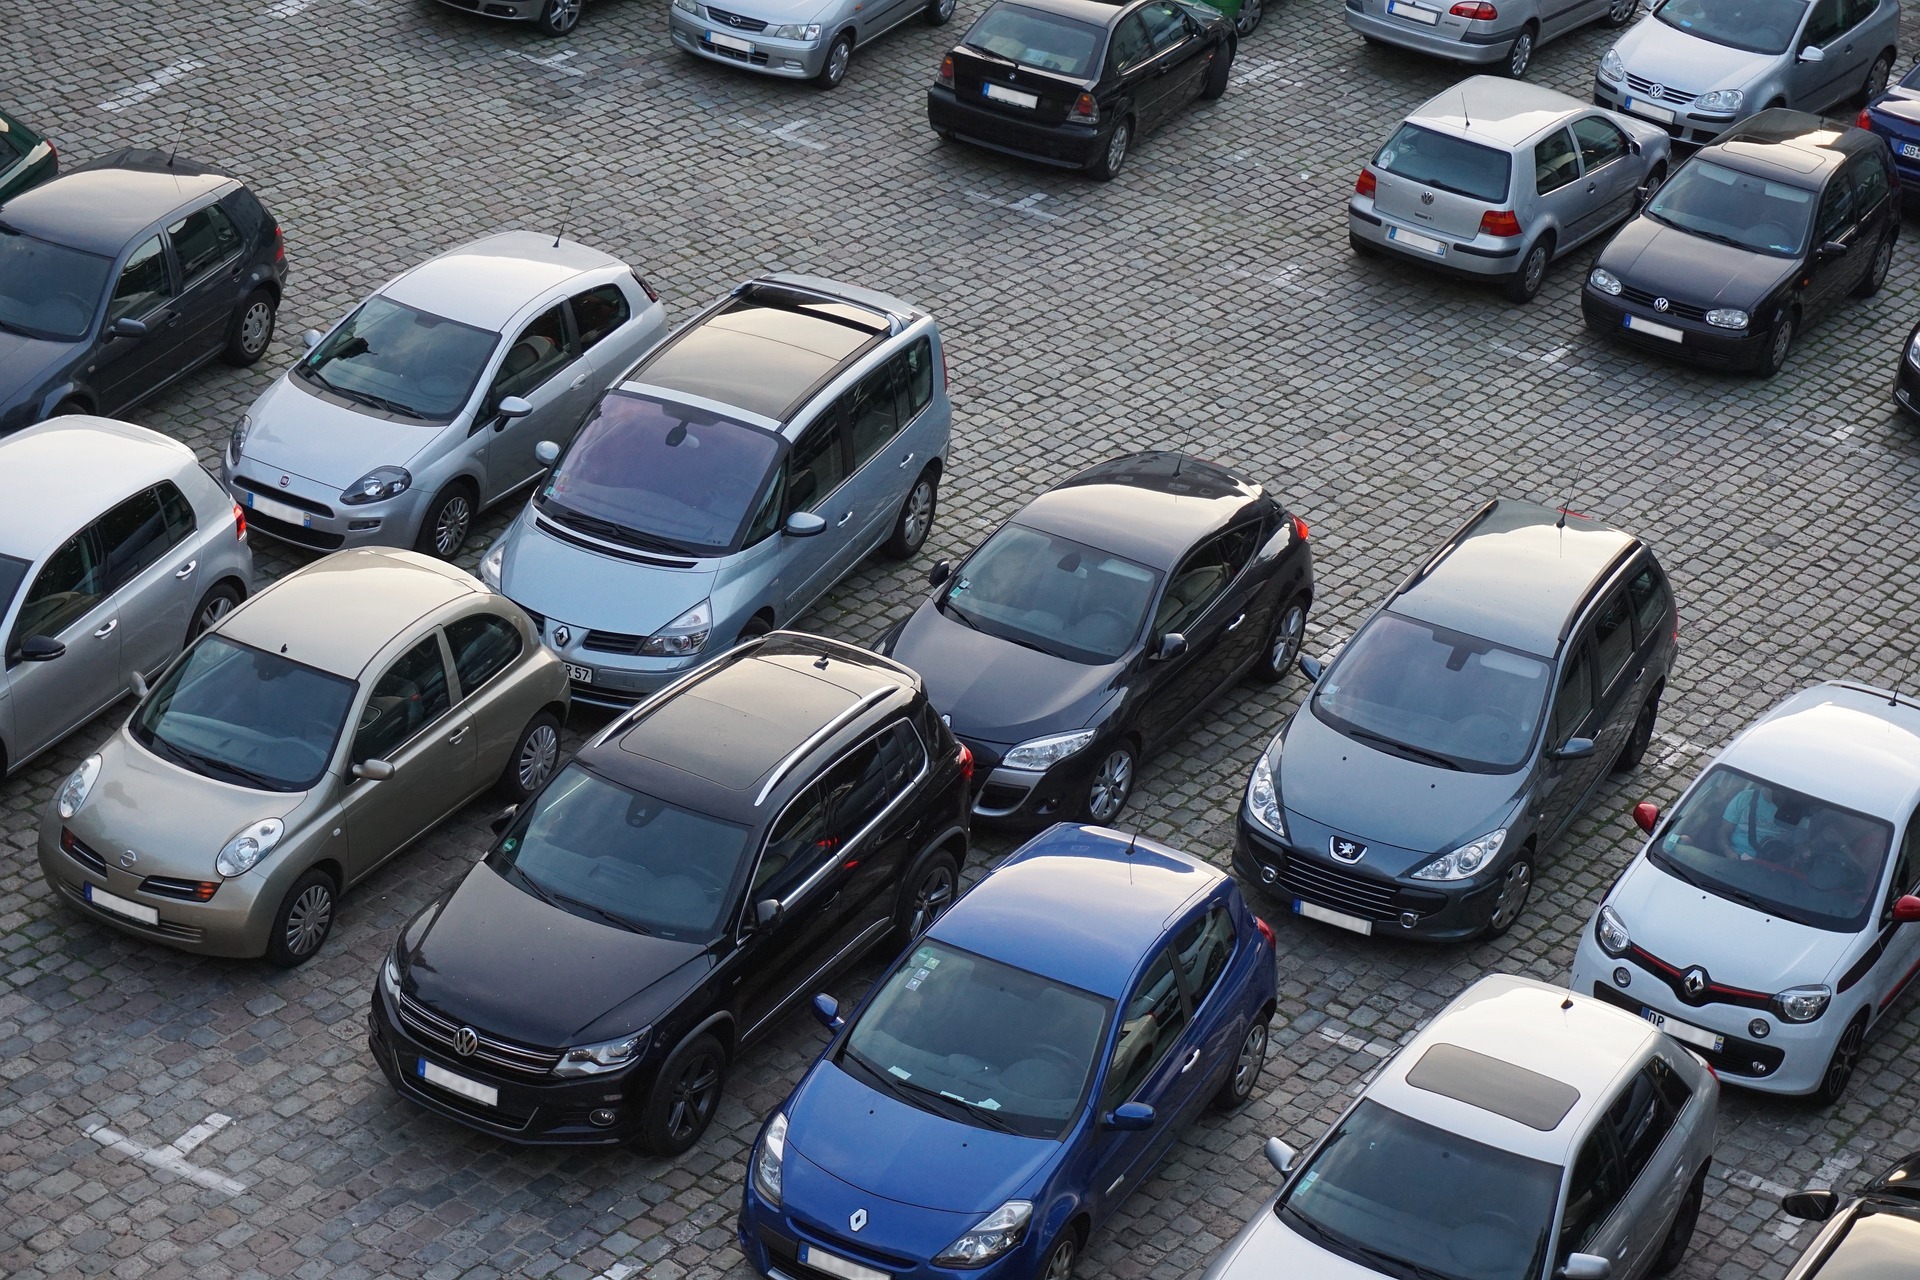 Guida assistita e assistenza al parcheggio - Garanzia auto